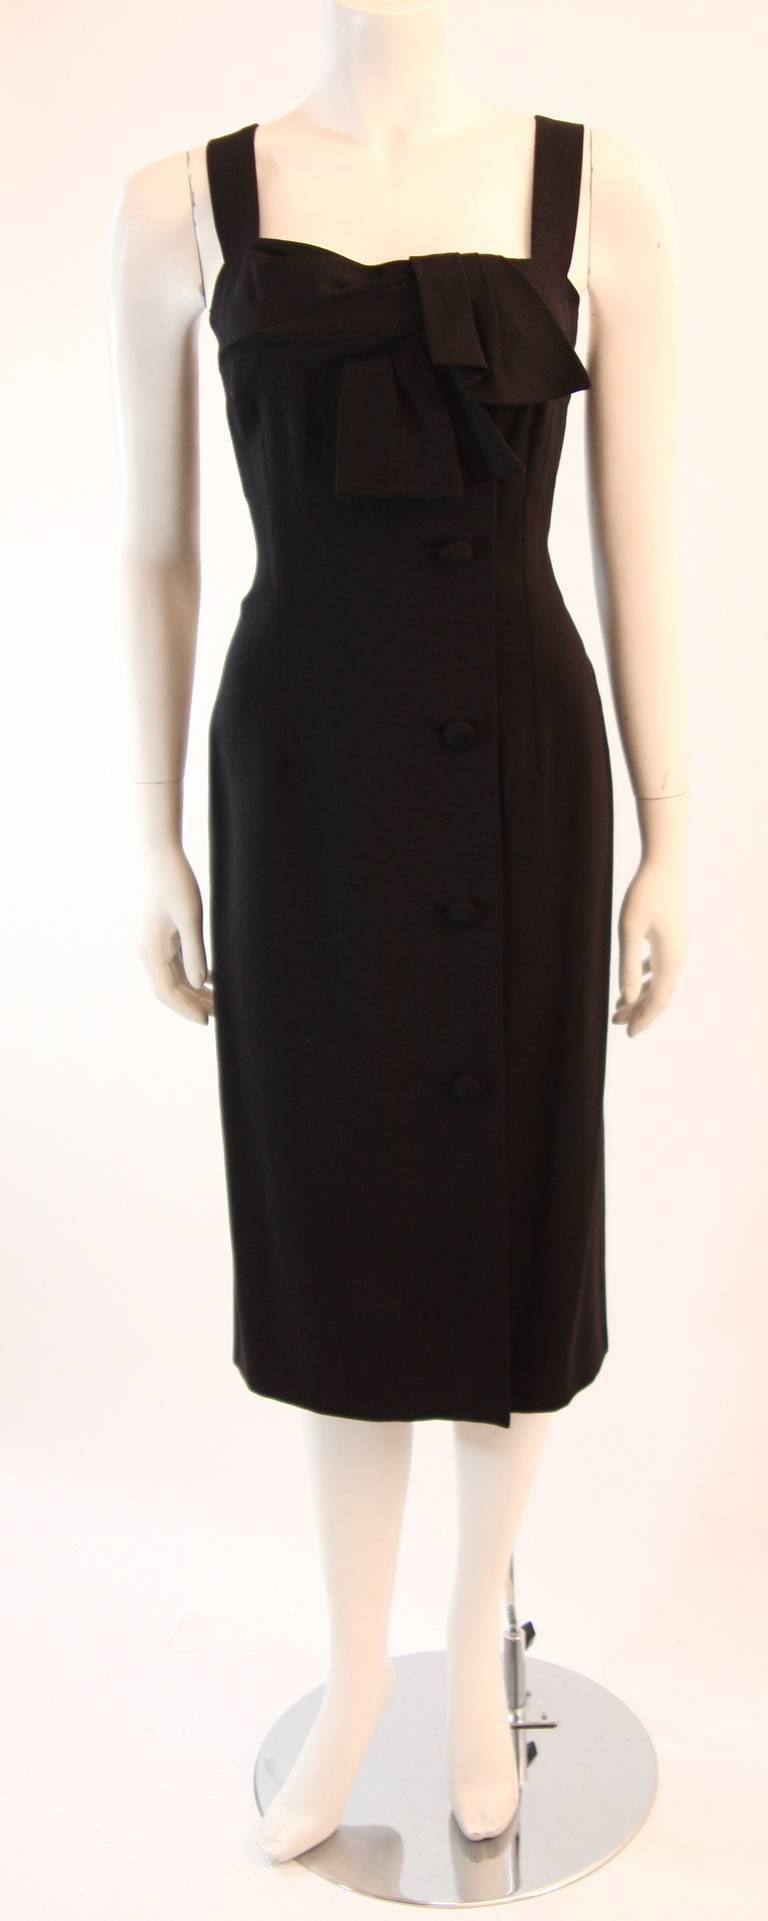 Dies ist ein wunderschönes COUTURE Pierre Balmain Kleid. Das Kleid ist aus einem wunderschönen schwarzen, schweren Leinen gefertigt. Dieses Dreiviertelkleid ist mit einer drapierten Schleife auf der Vorderseite und seitlichen Knöpfen verziert.